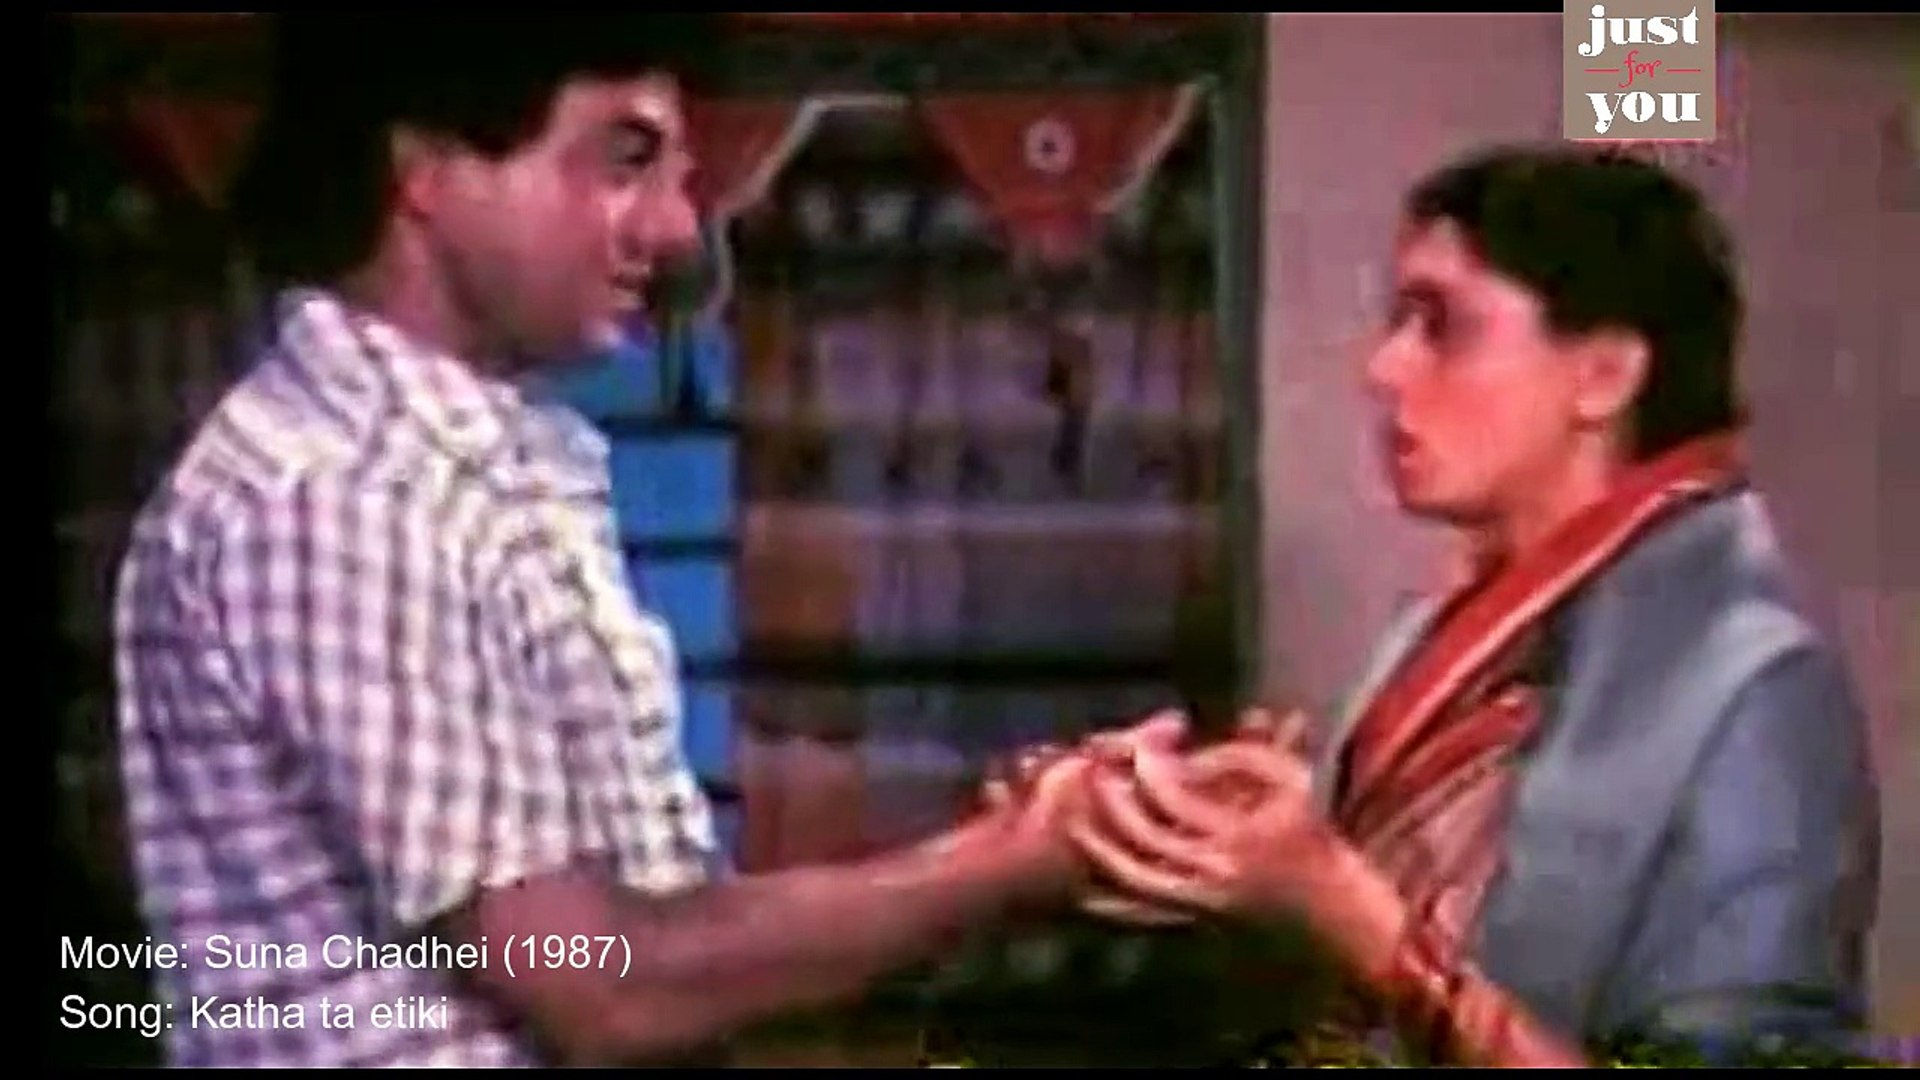 Katha ta etiki (720p) | Odia Movie: Suna Chadhei (1987)